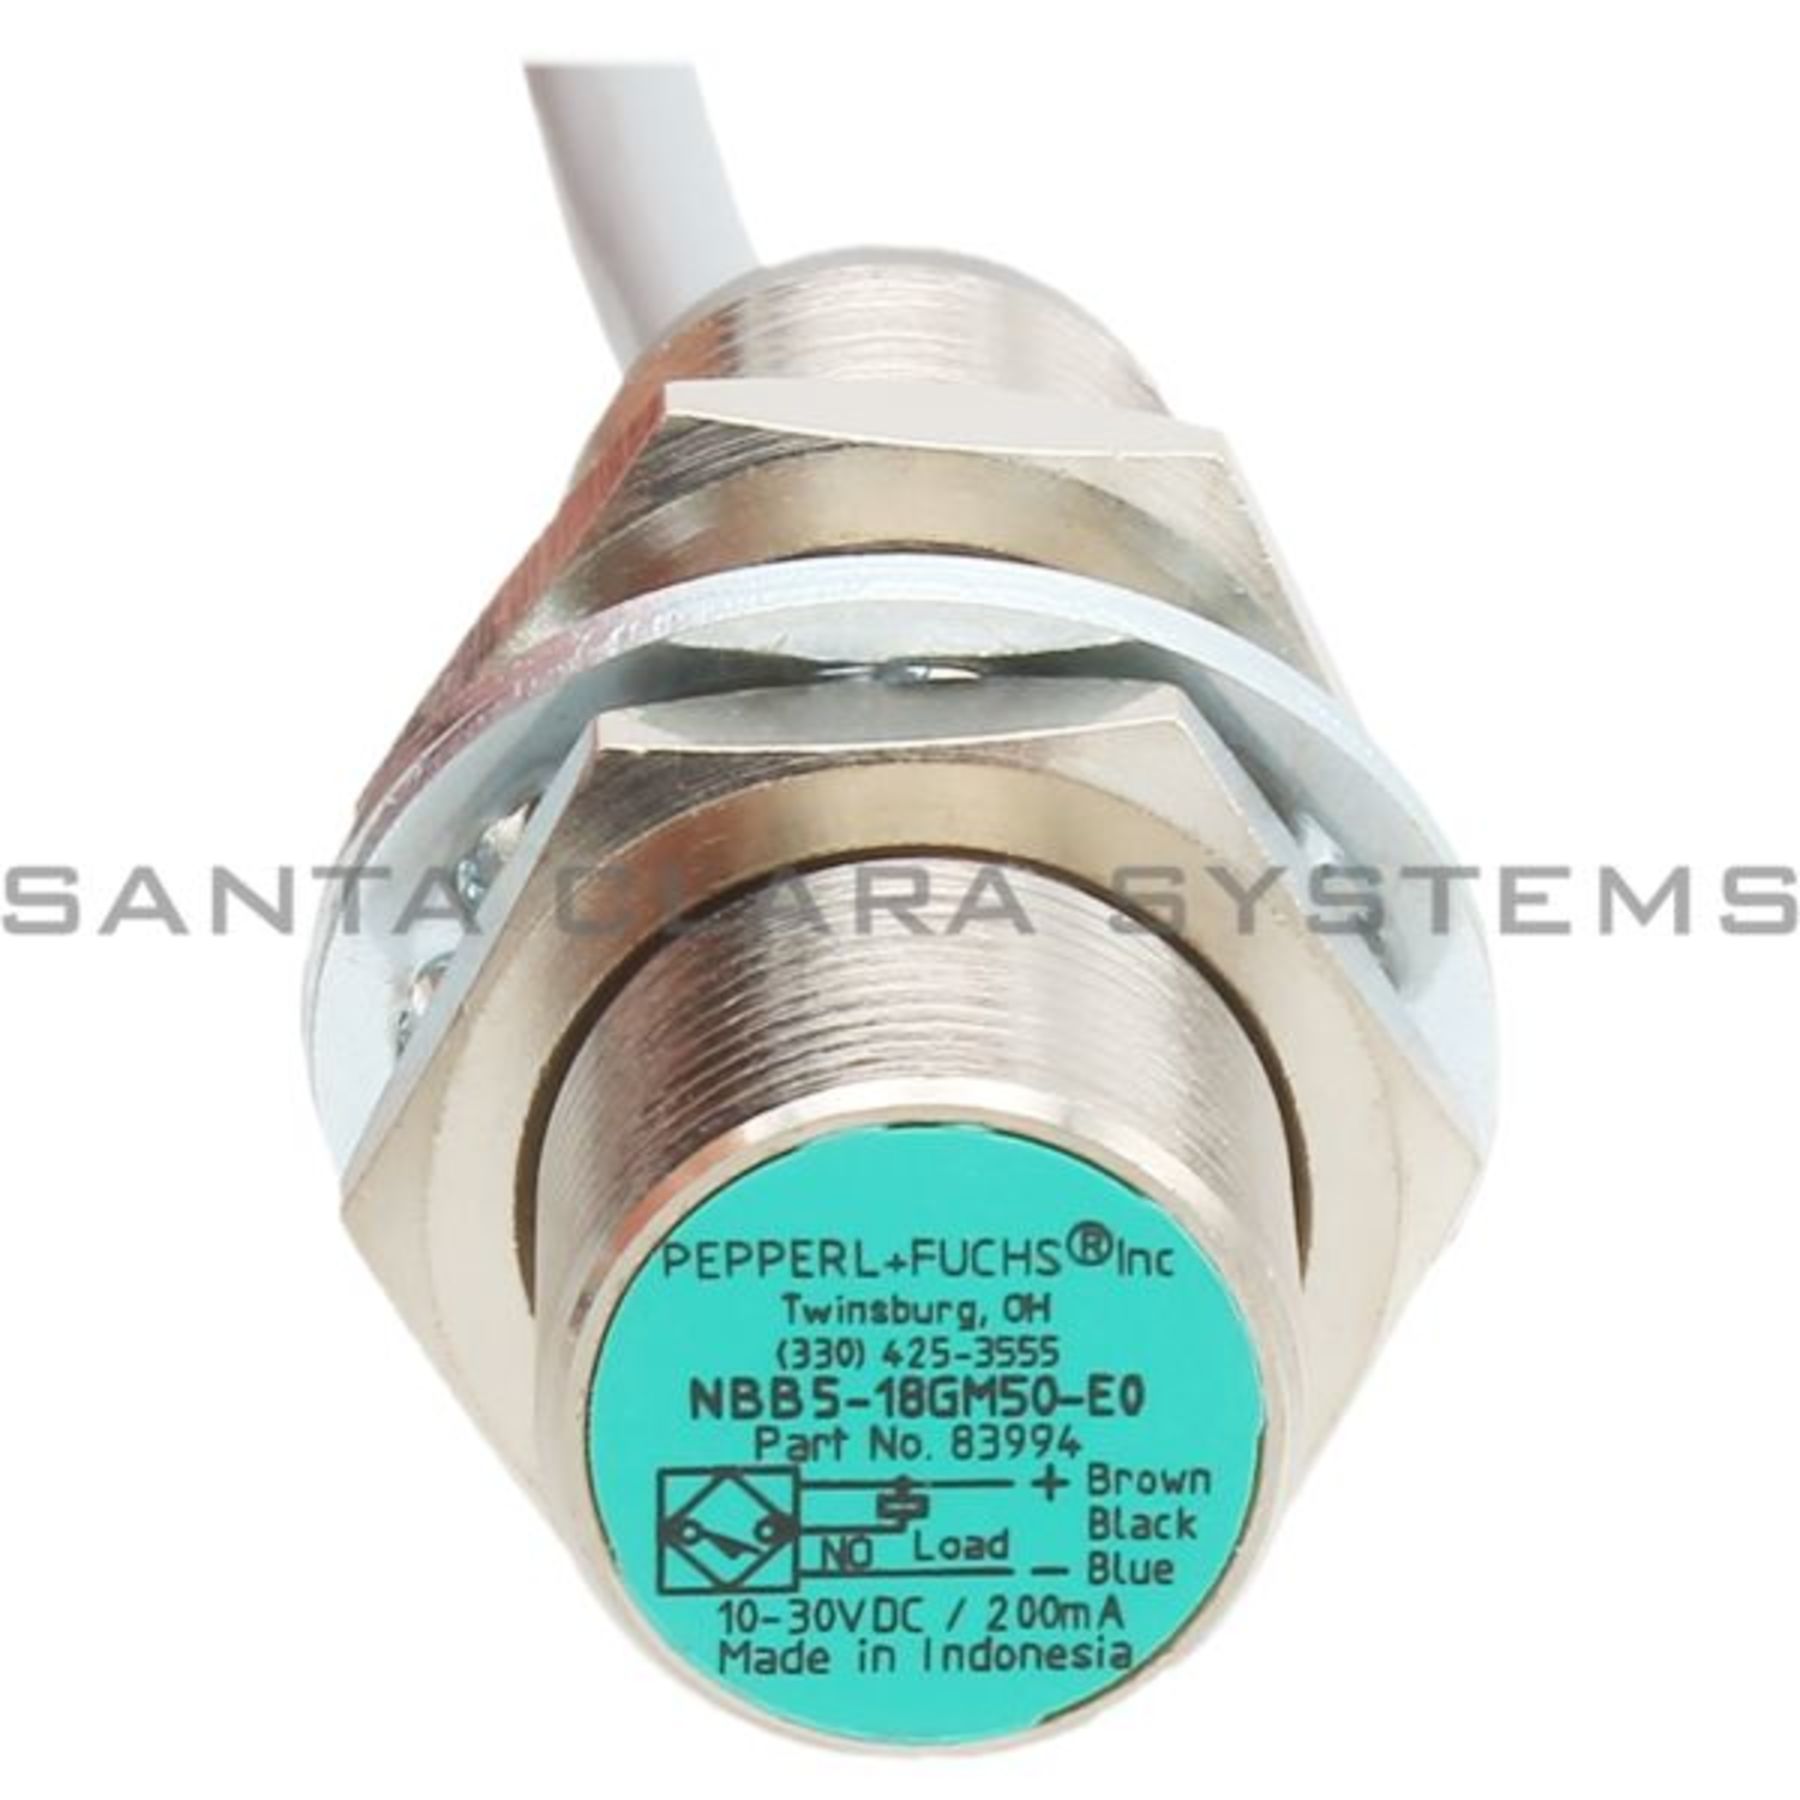 Pensamiento Estallar Tendero Pepperl+Fuchs Proximity Sensor W/ Cable P/N 83994 10-30 VDC / 200ma  NBB5-18GM50-E0 En stock y listos para enviar - Santa Clara Systems